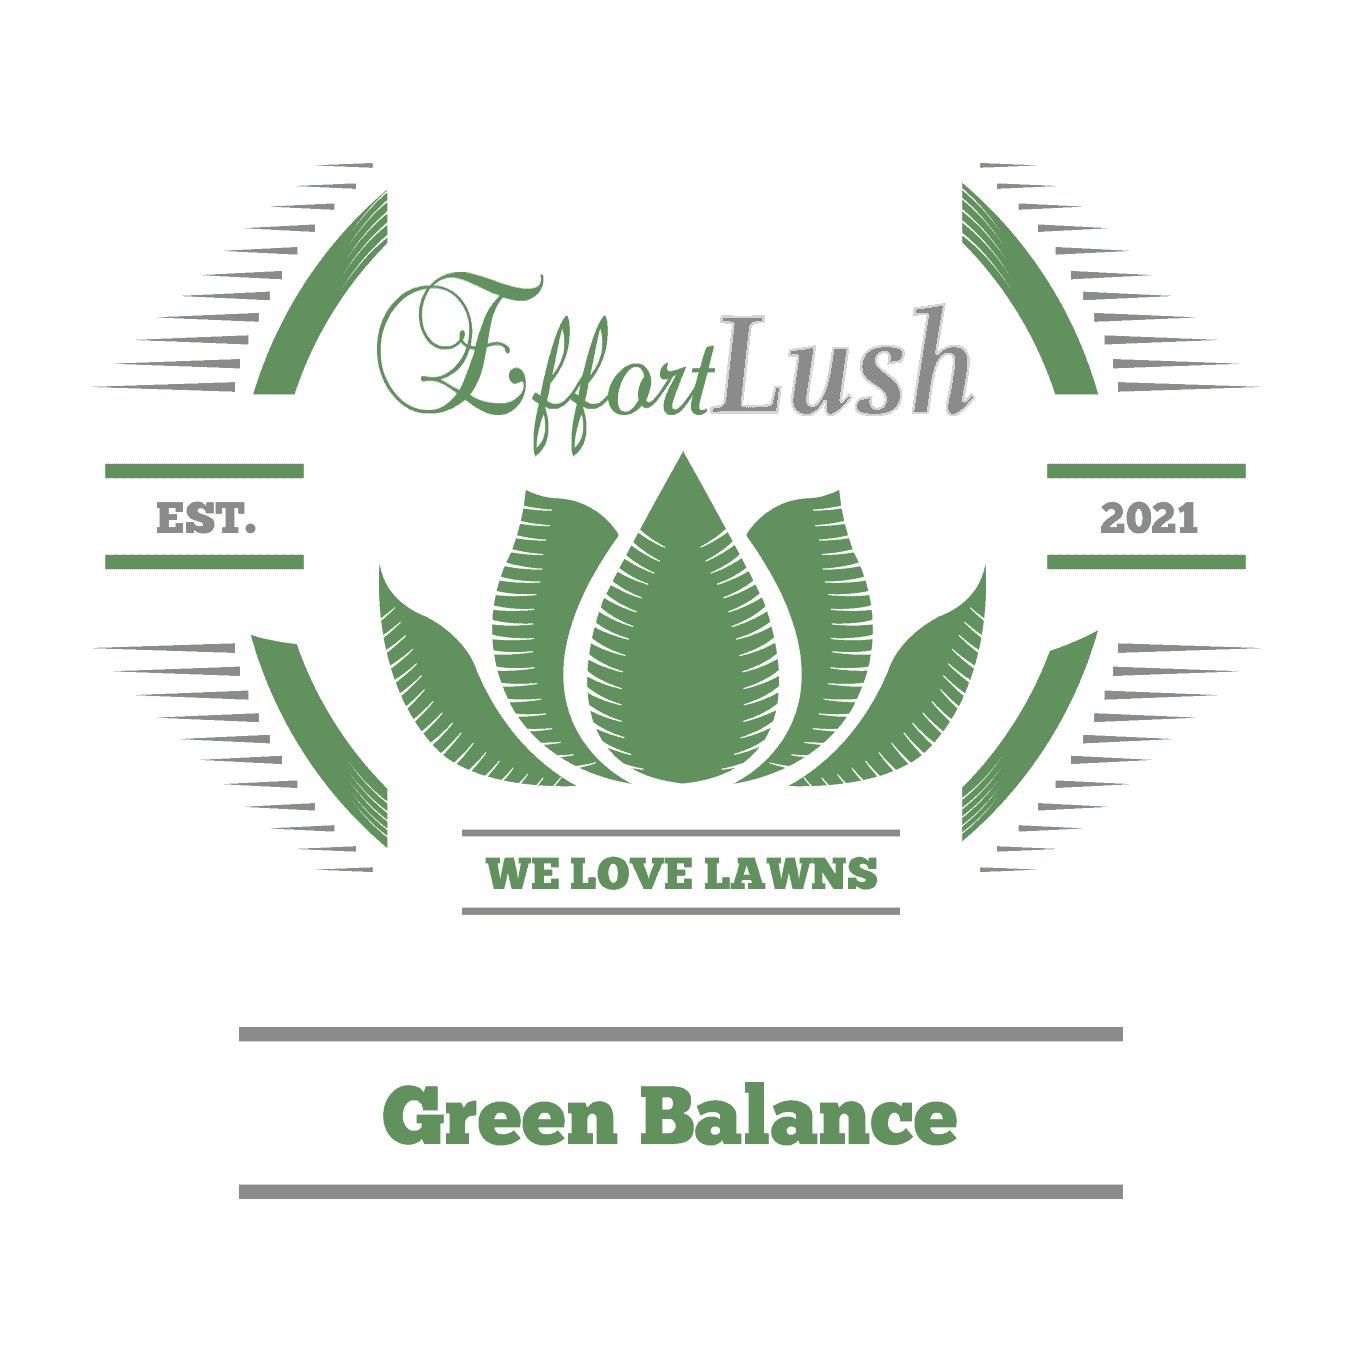 Green Balance